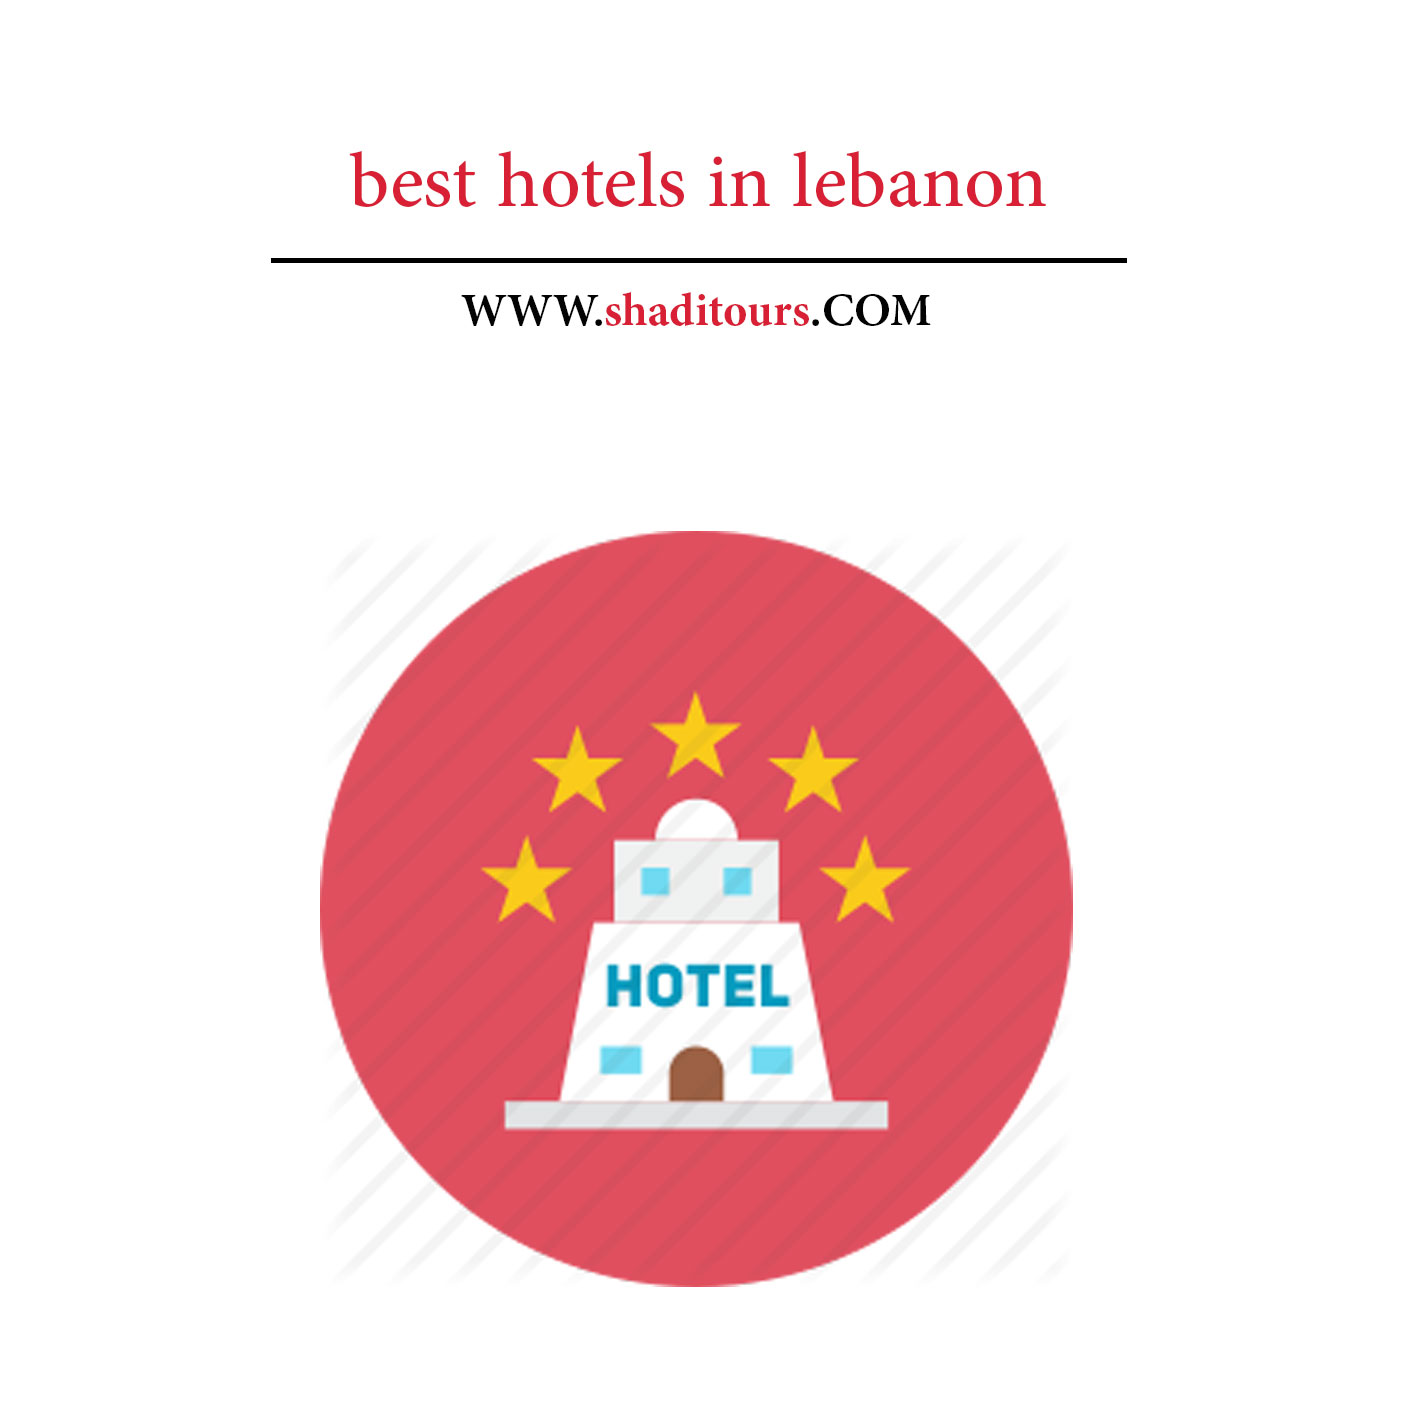 hotels-lebanon-shaditours